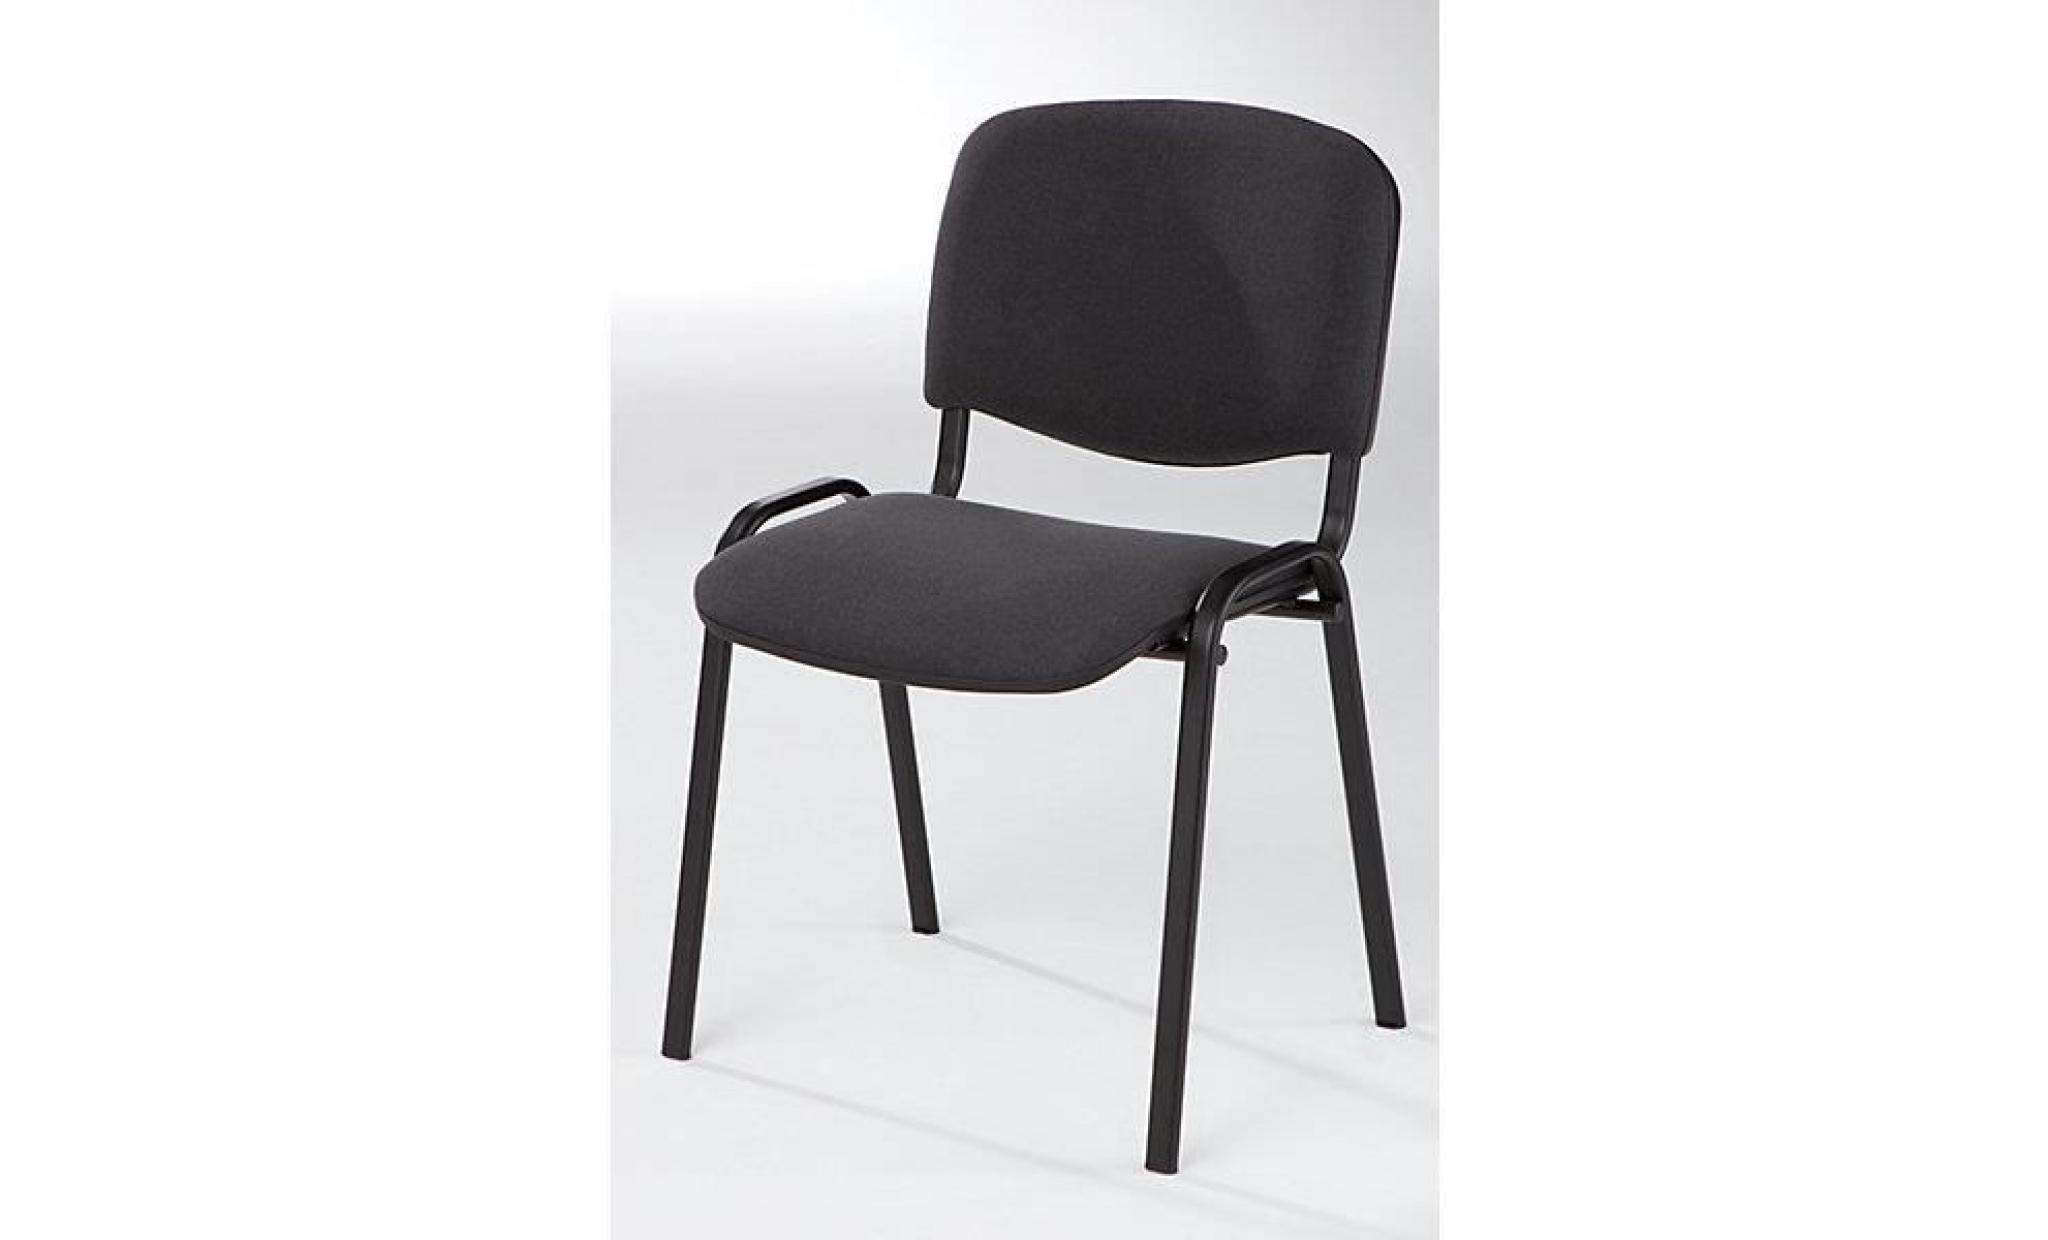 siège visiteur empilable   dossier rembourré, piétement chromé habillage gris, lot de 4   chaise chaise empilable chaise empilable pas cher